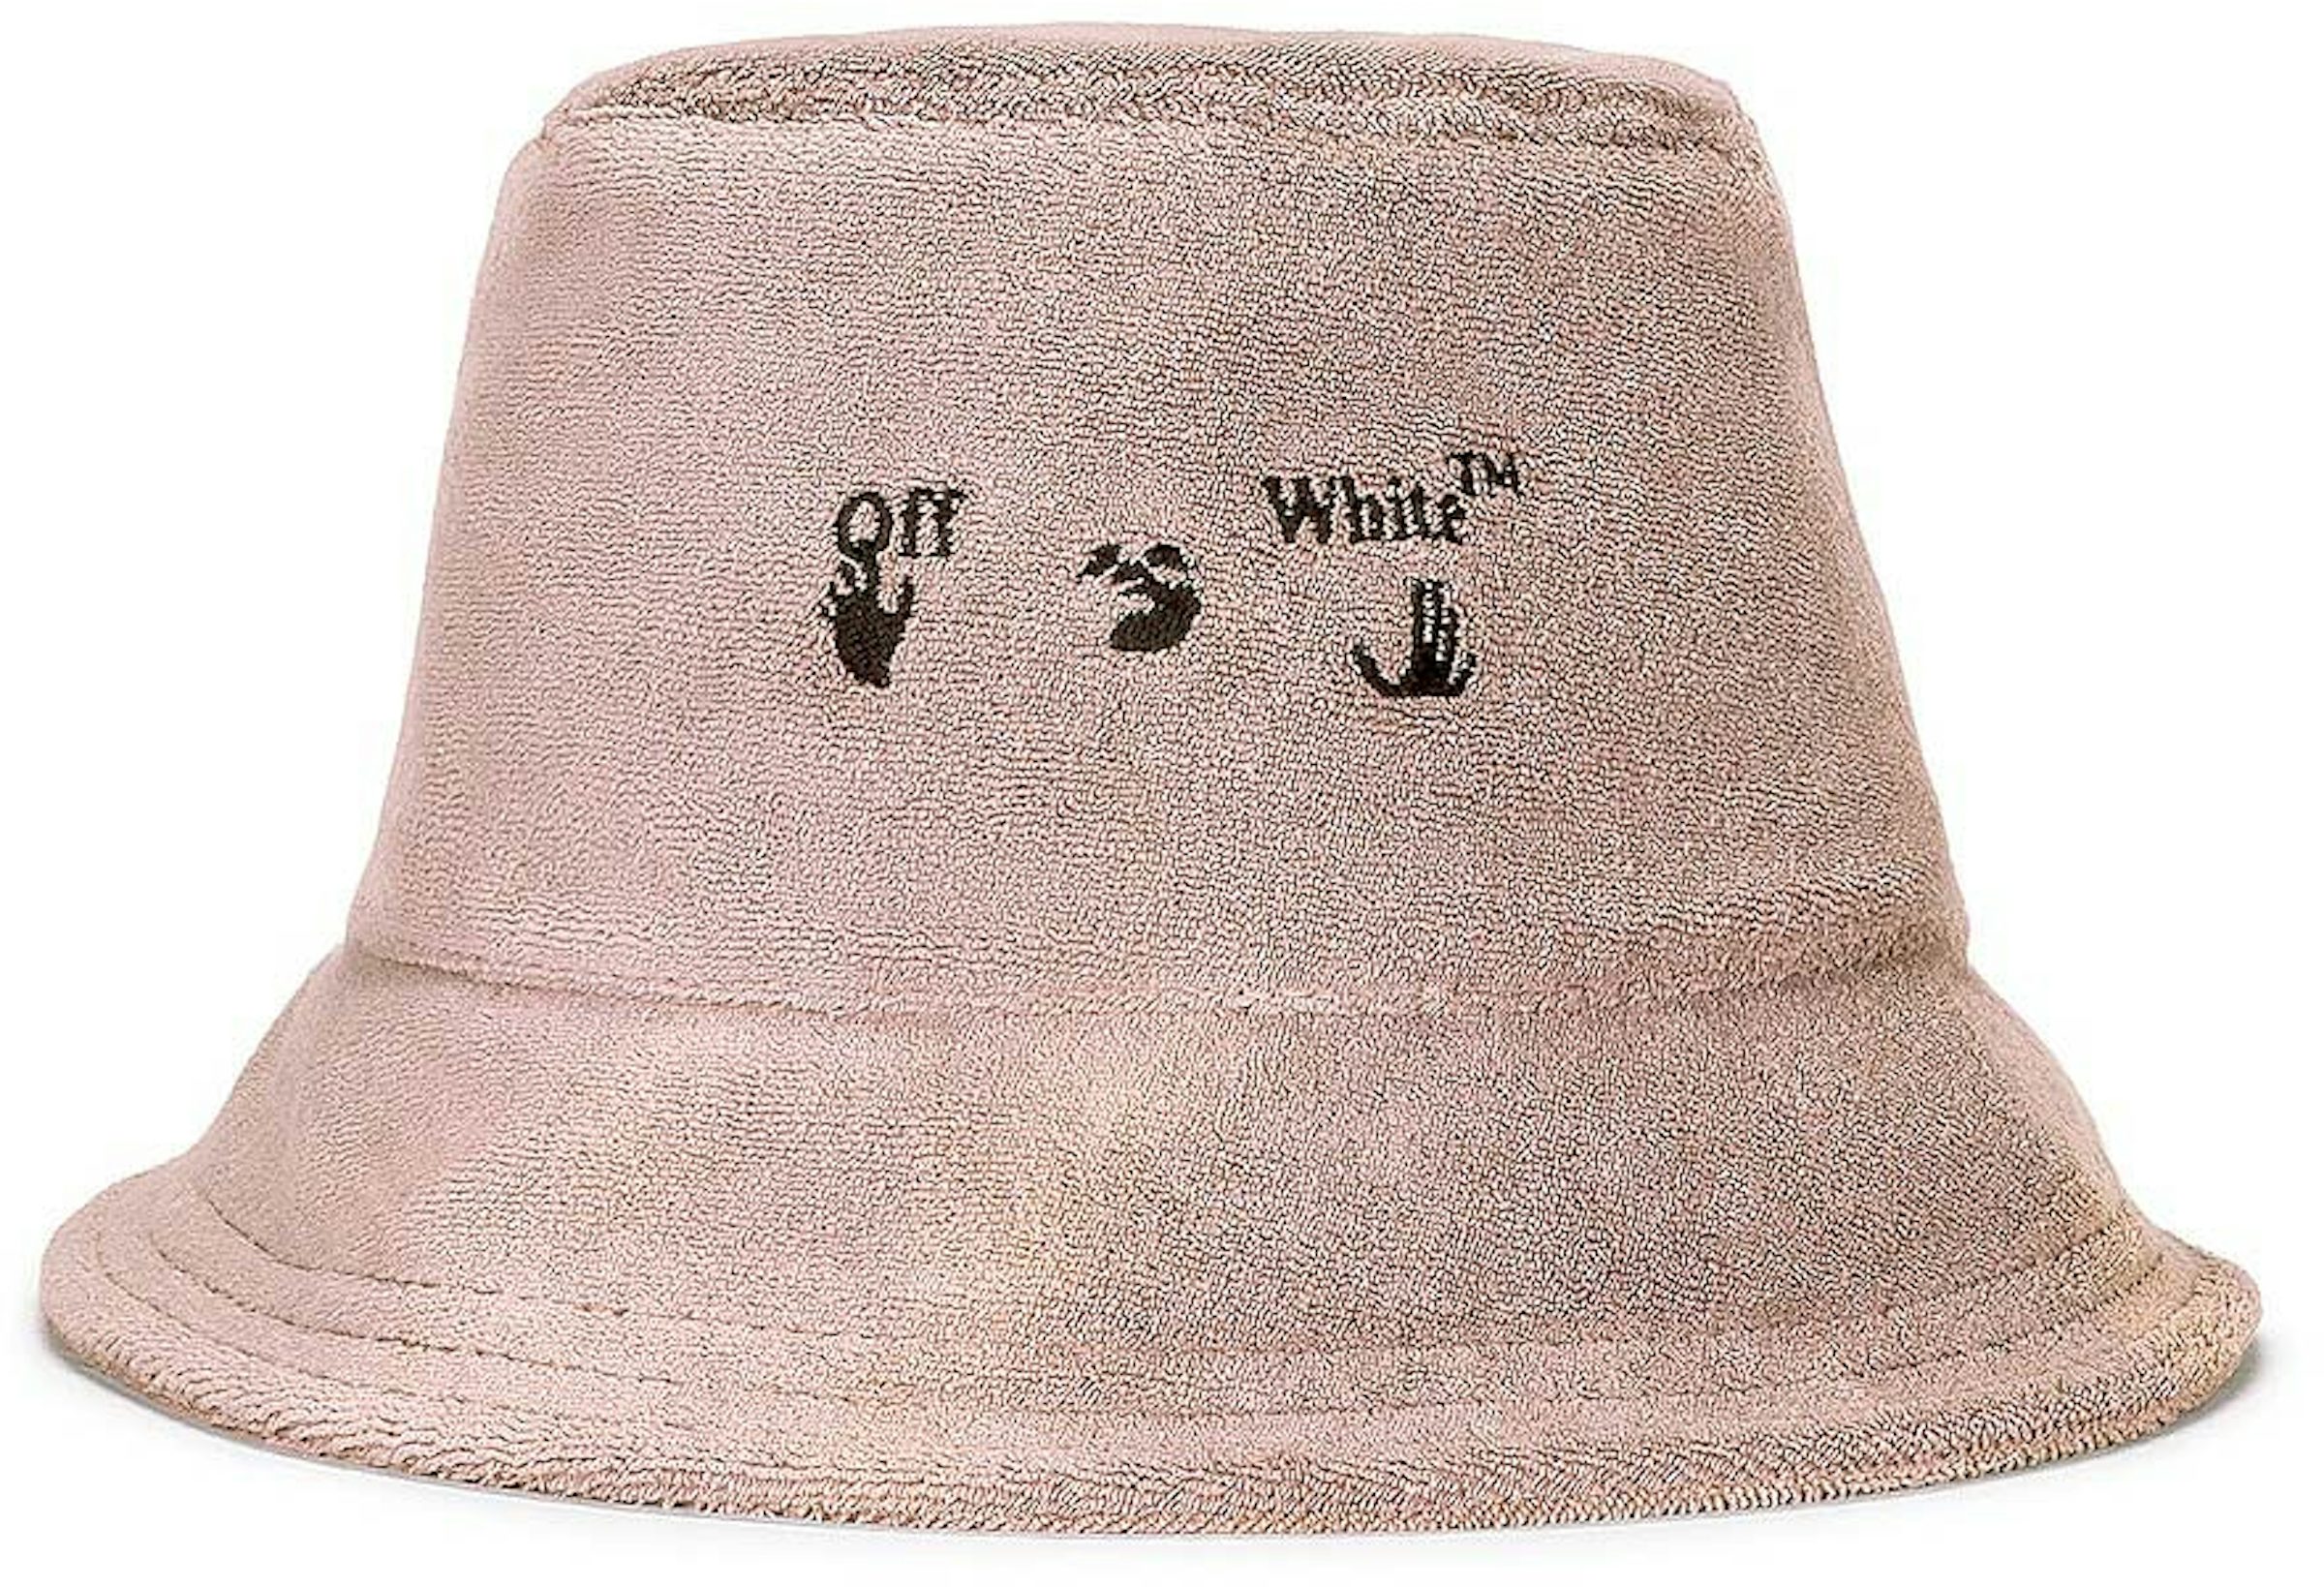 Louis Vuitton Beachview Bucket Hat Natural colour in Viscose/Cotton - US